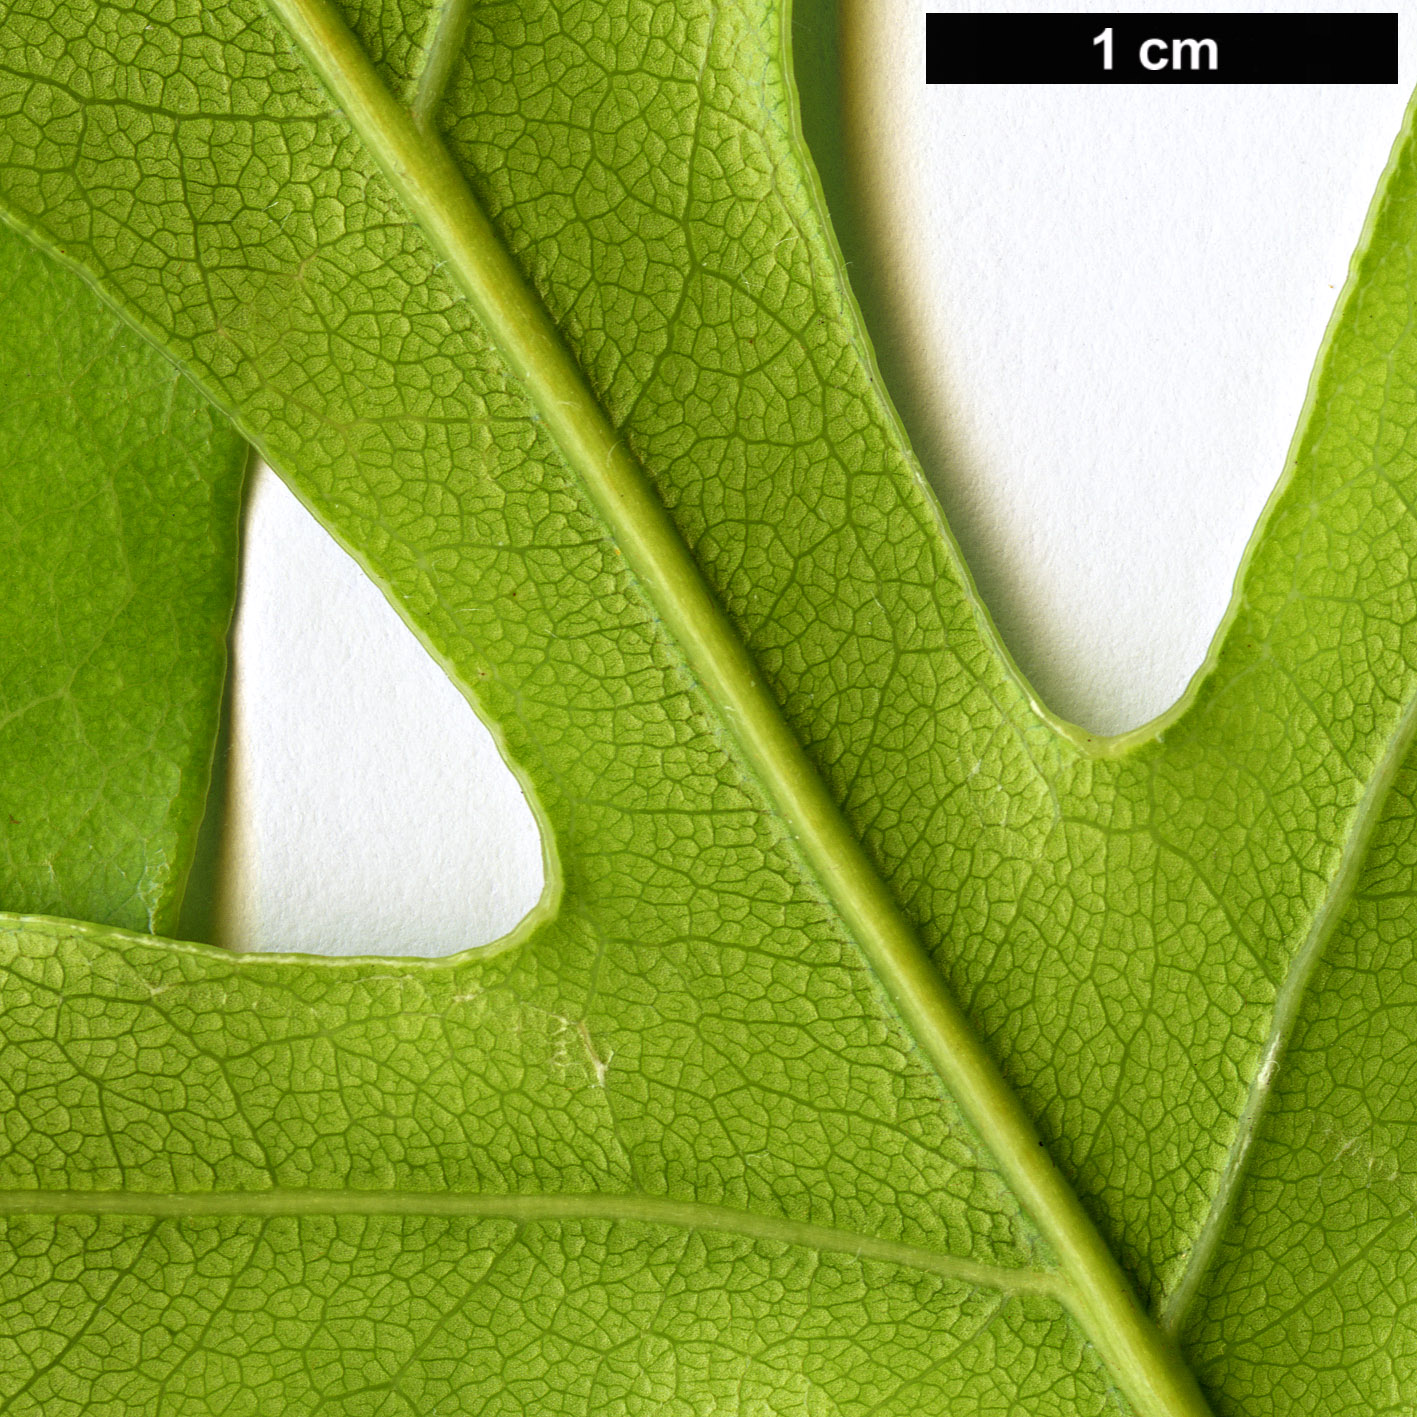 High resolution image: Family: Proteaceae - Genus: Stenocarpus - Taxon: sinuatus